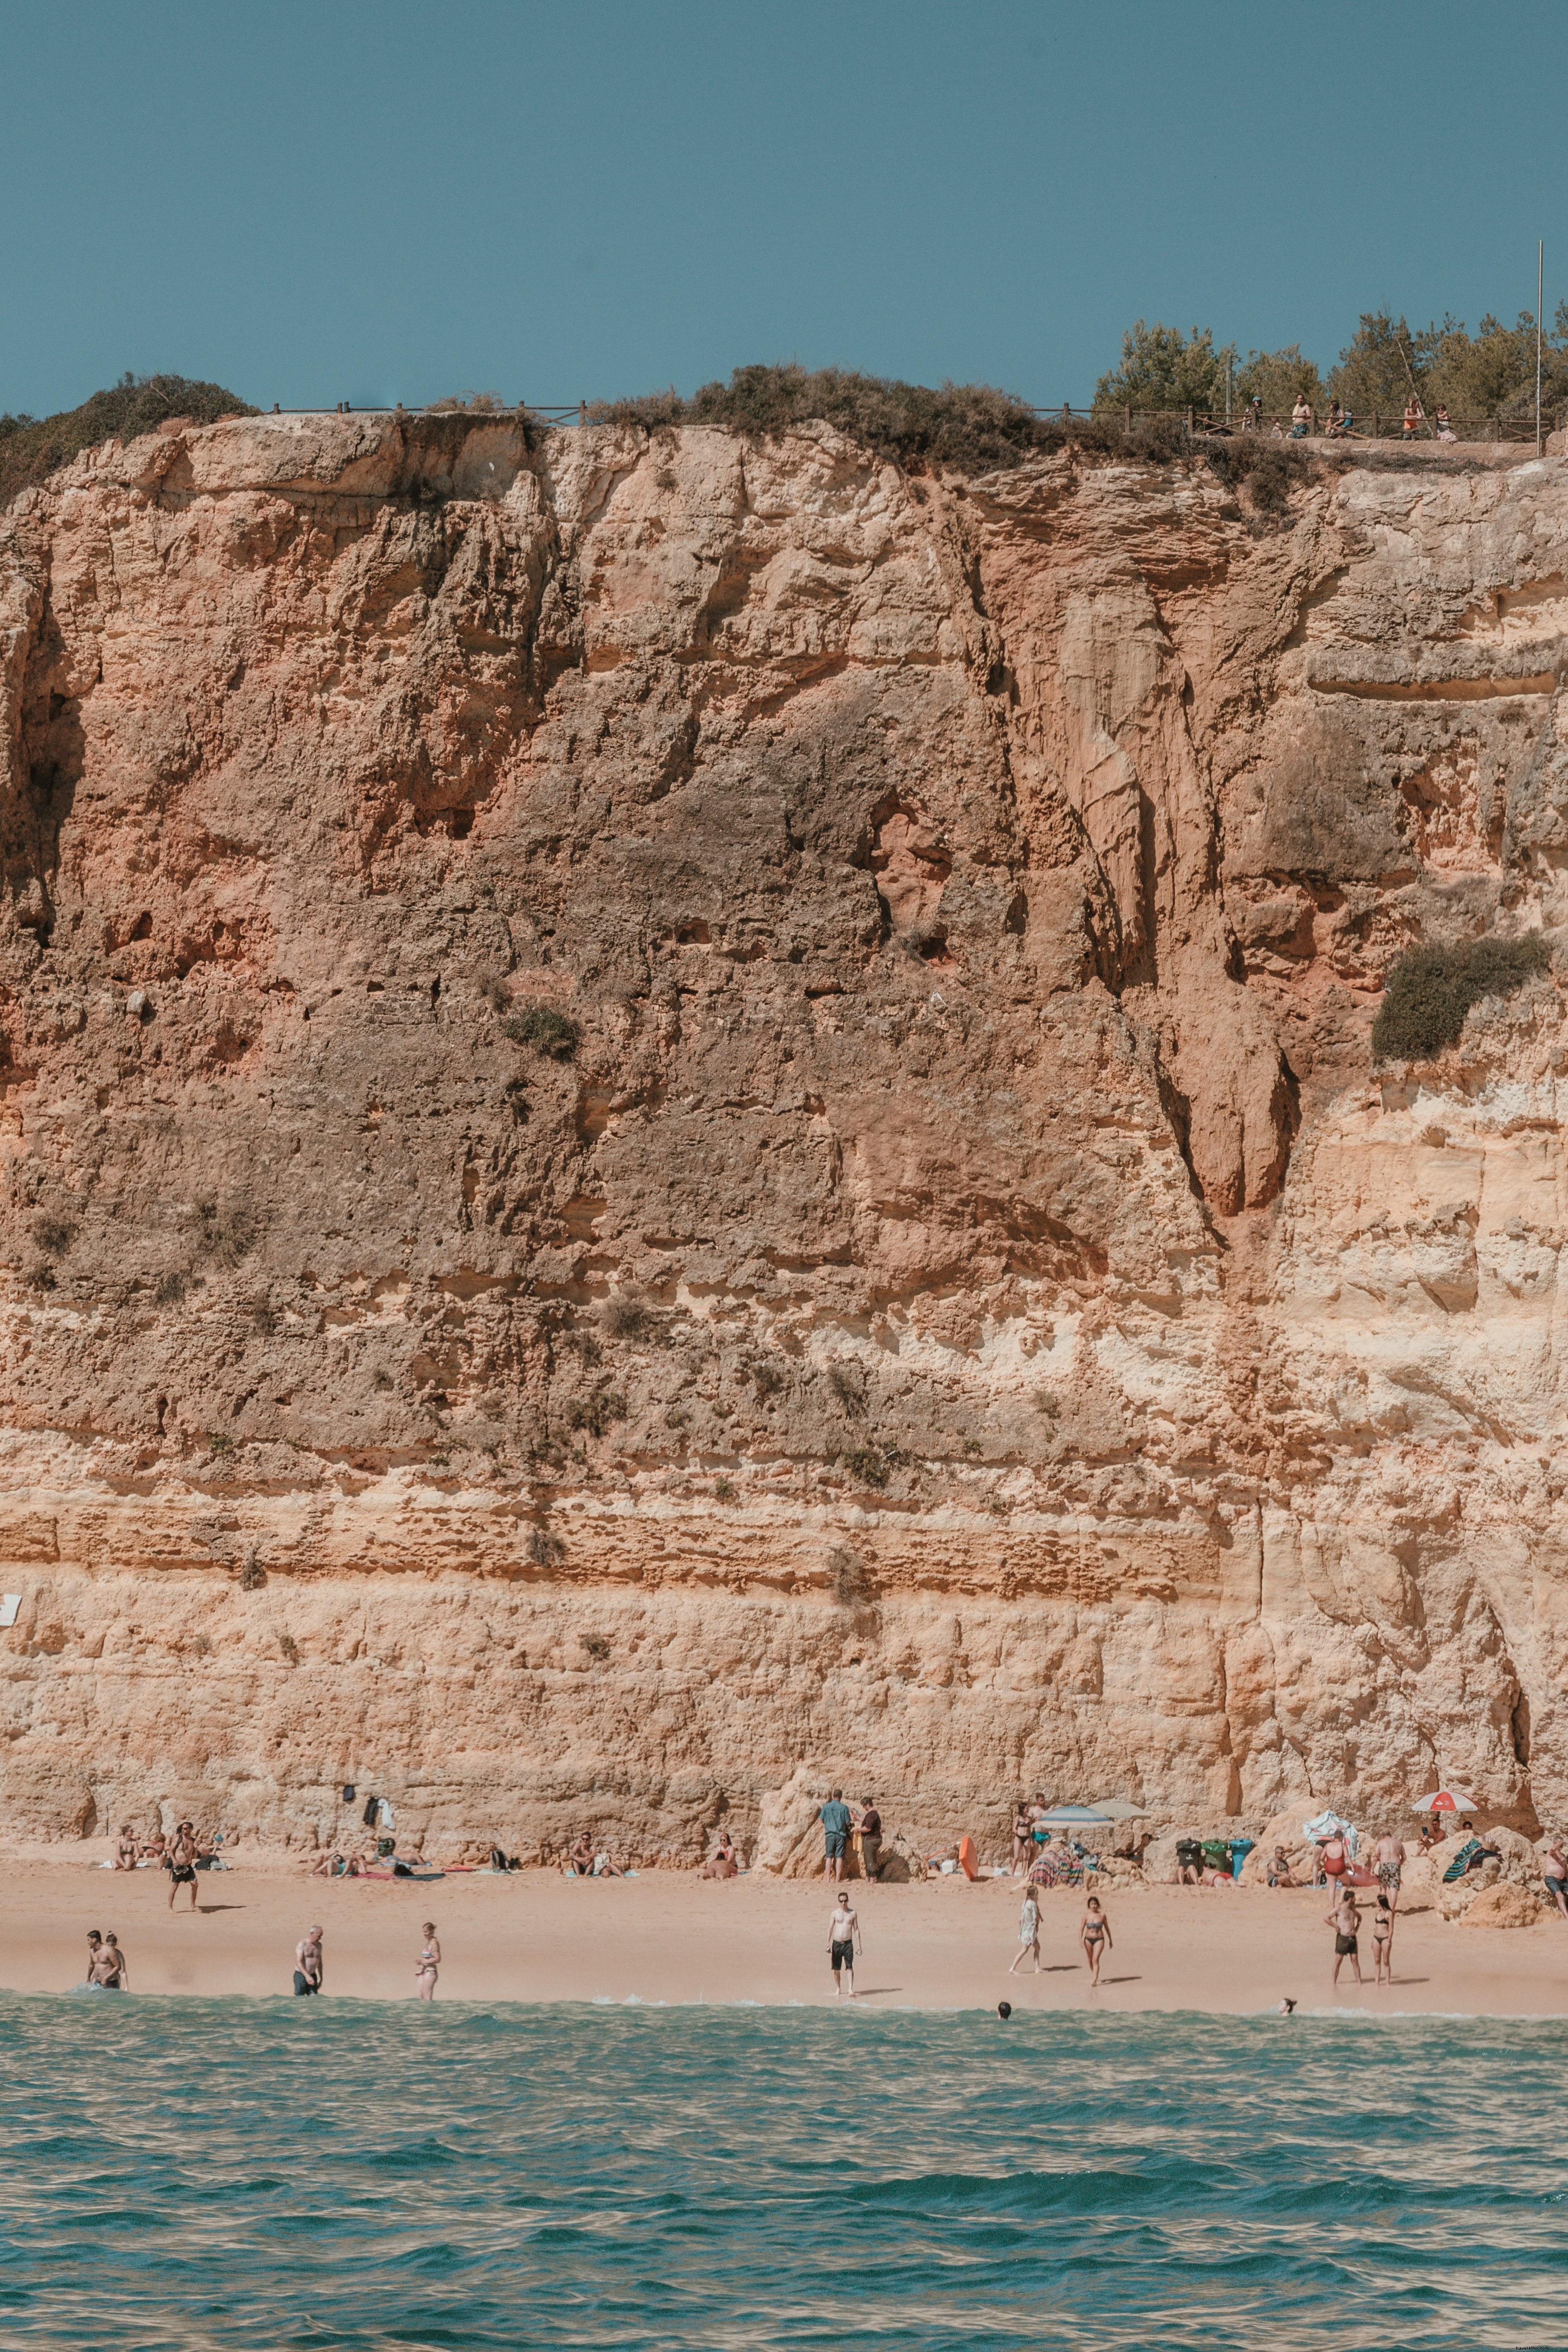 Los acantilados agrietados por el sol dan a los bañistas en una foto de playa de arena